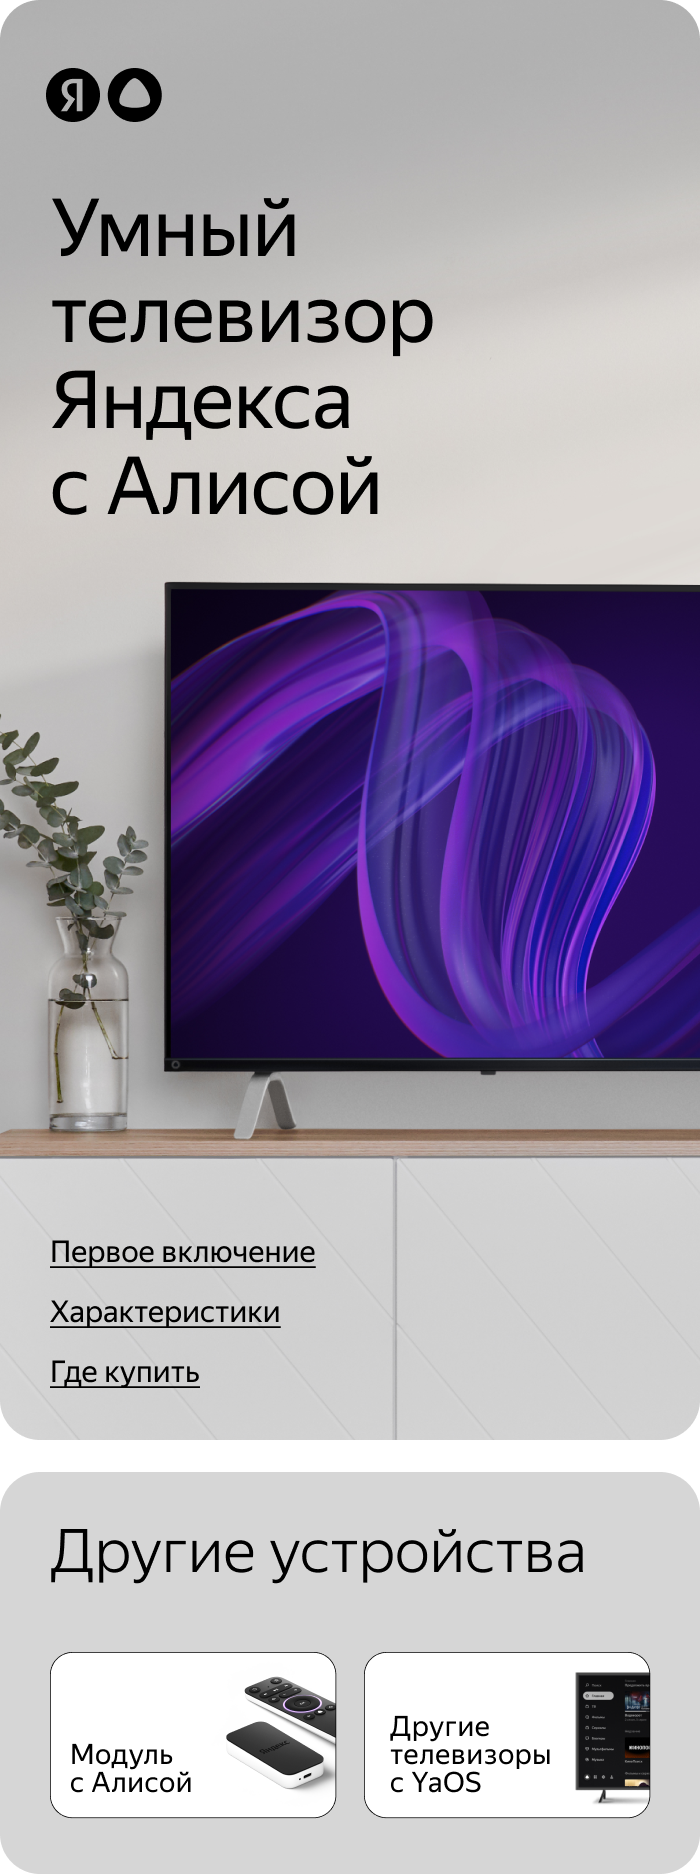 Умный телевизор Яндекса с Алисой